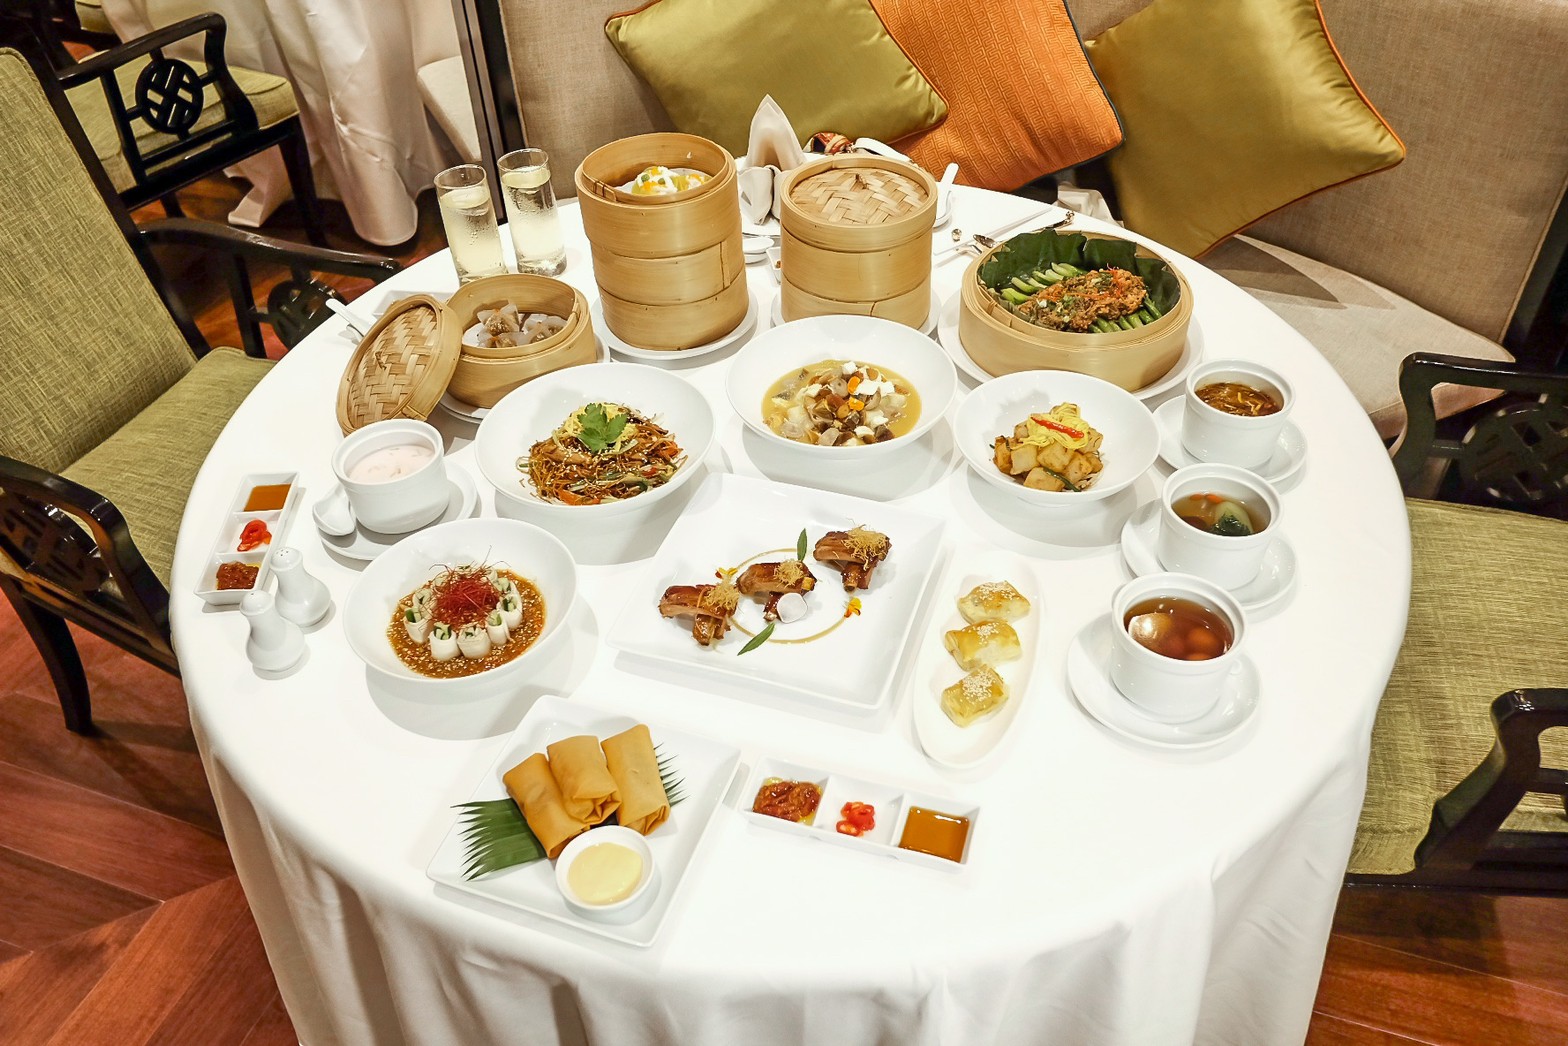 สิทธิพิเศษที่ห้องอาหาร Summer Palace สำหรับ All-you-can-eat Dim Sum  โรงแรม InterContinental Bangkok